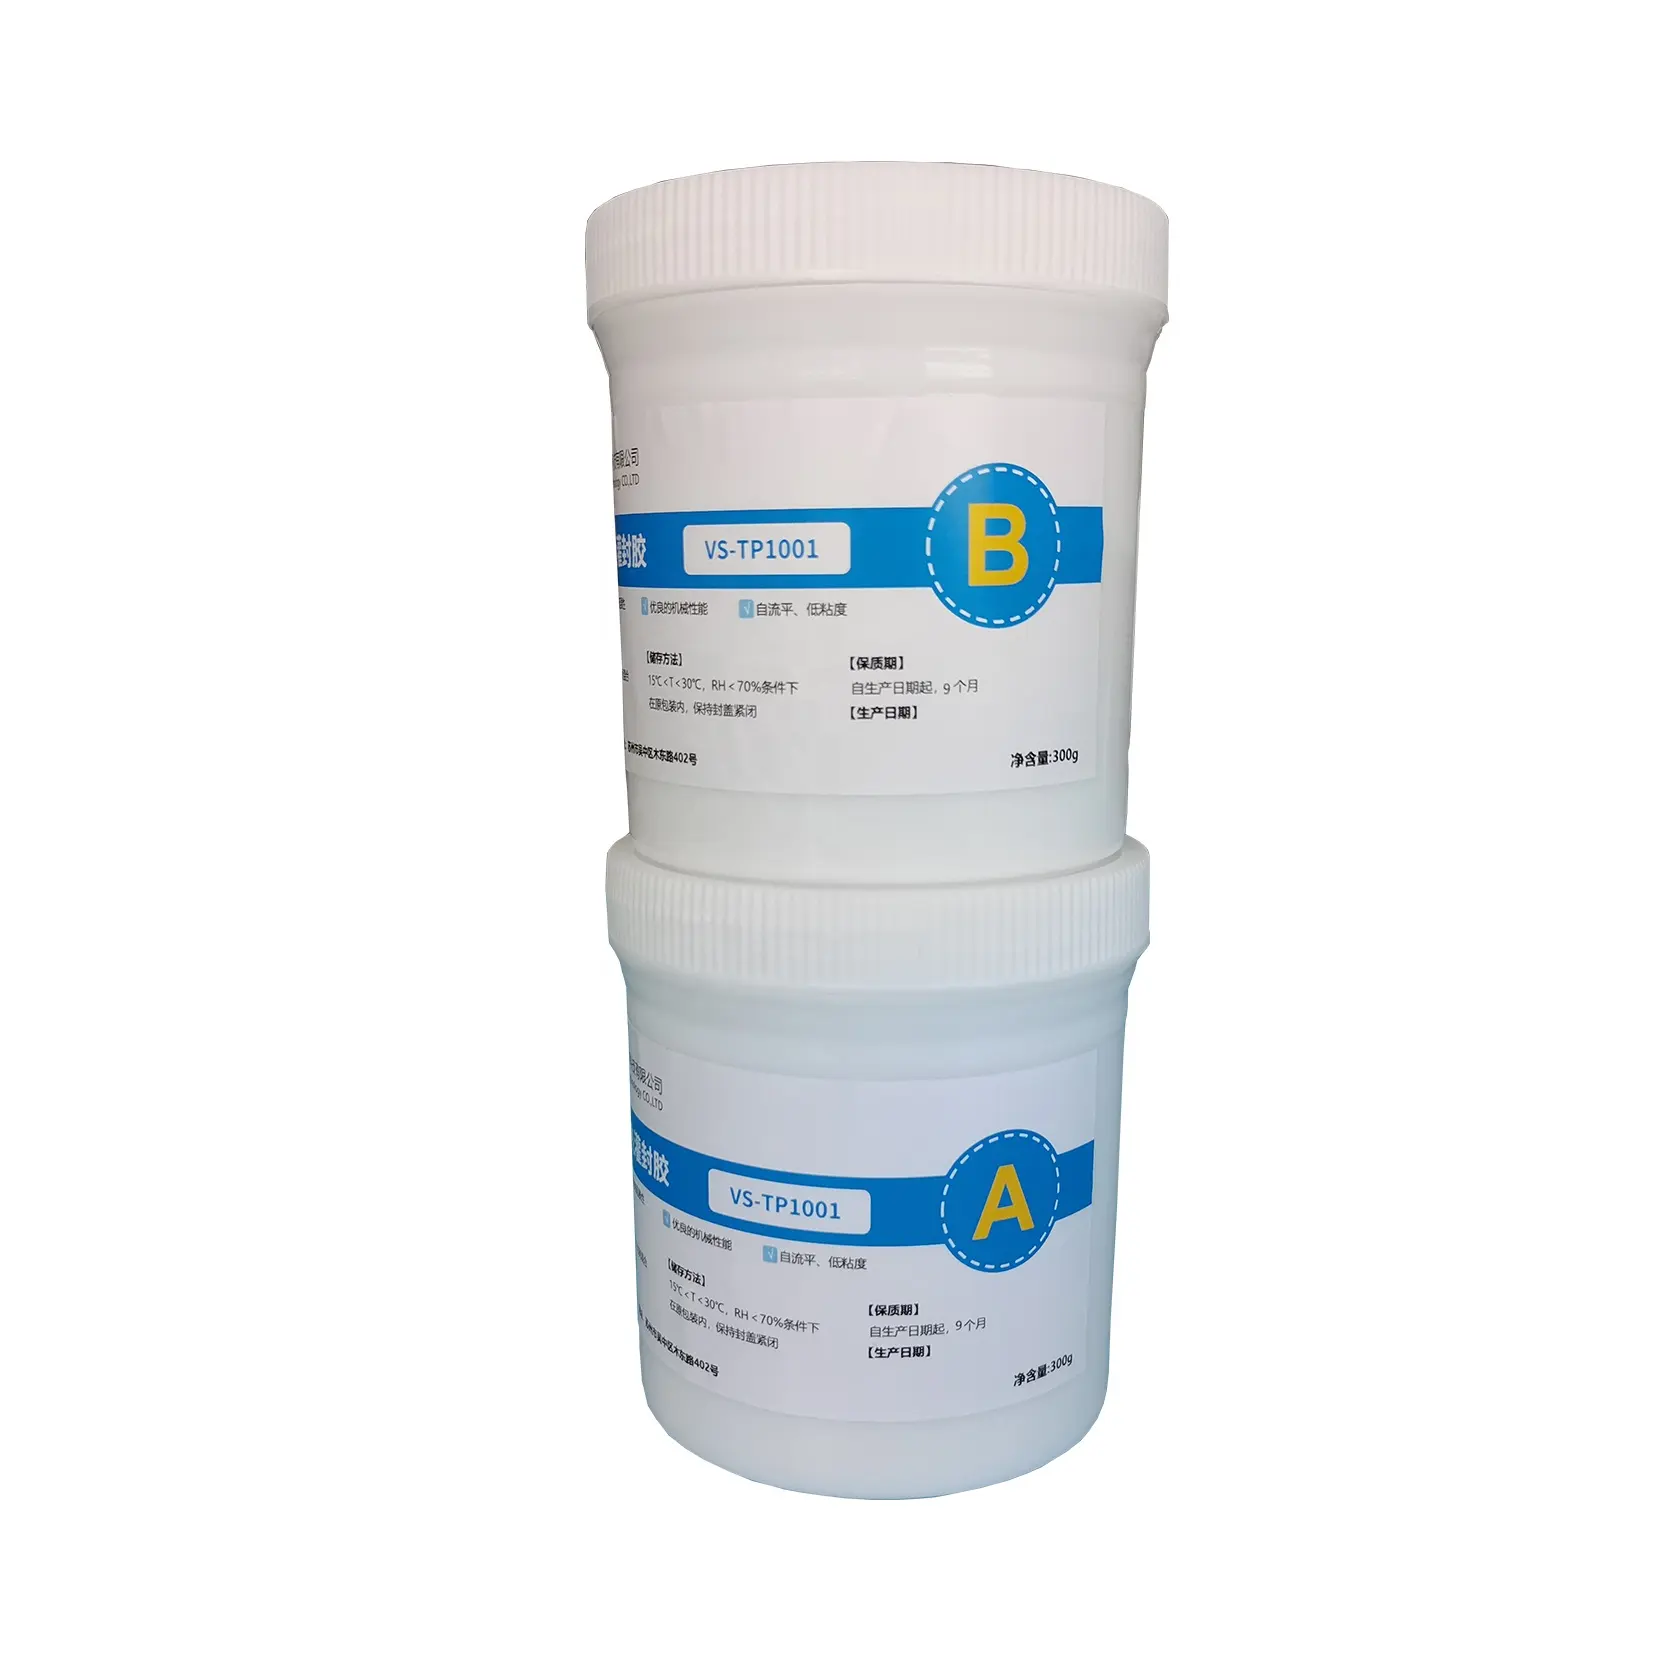 Composto de silicone para envasamento de silicone com cola AB, dois componentes, proporção de mistura de 1:1, composto auto-nivelador para envasamento de silicone